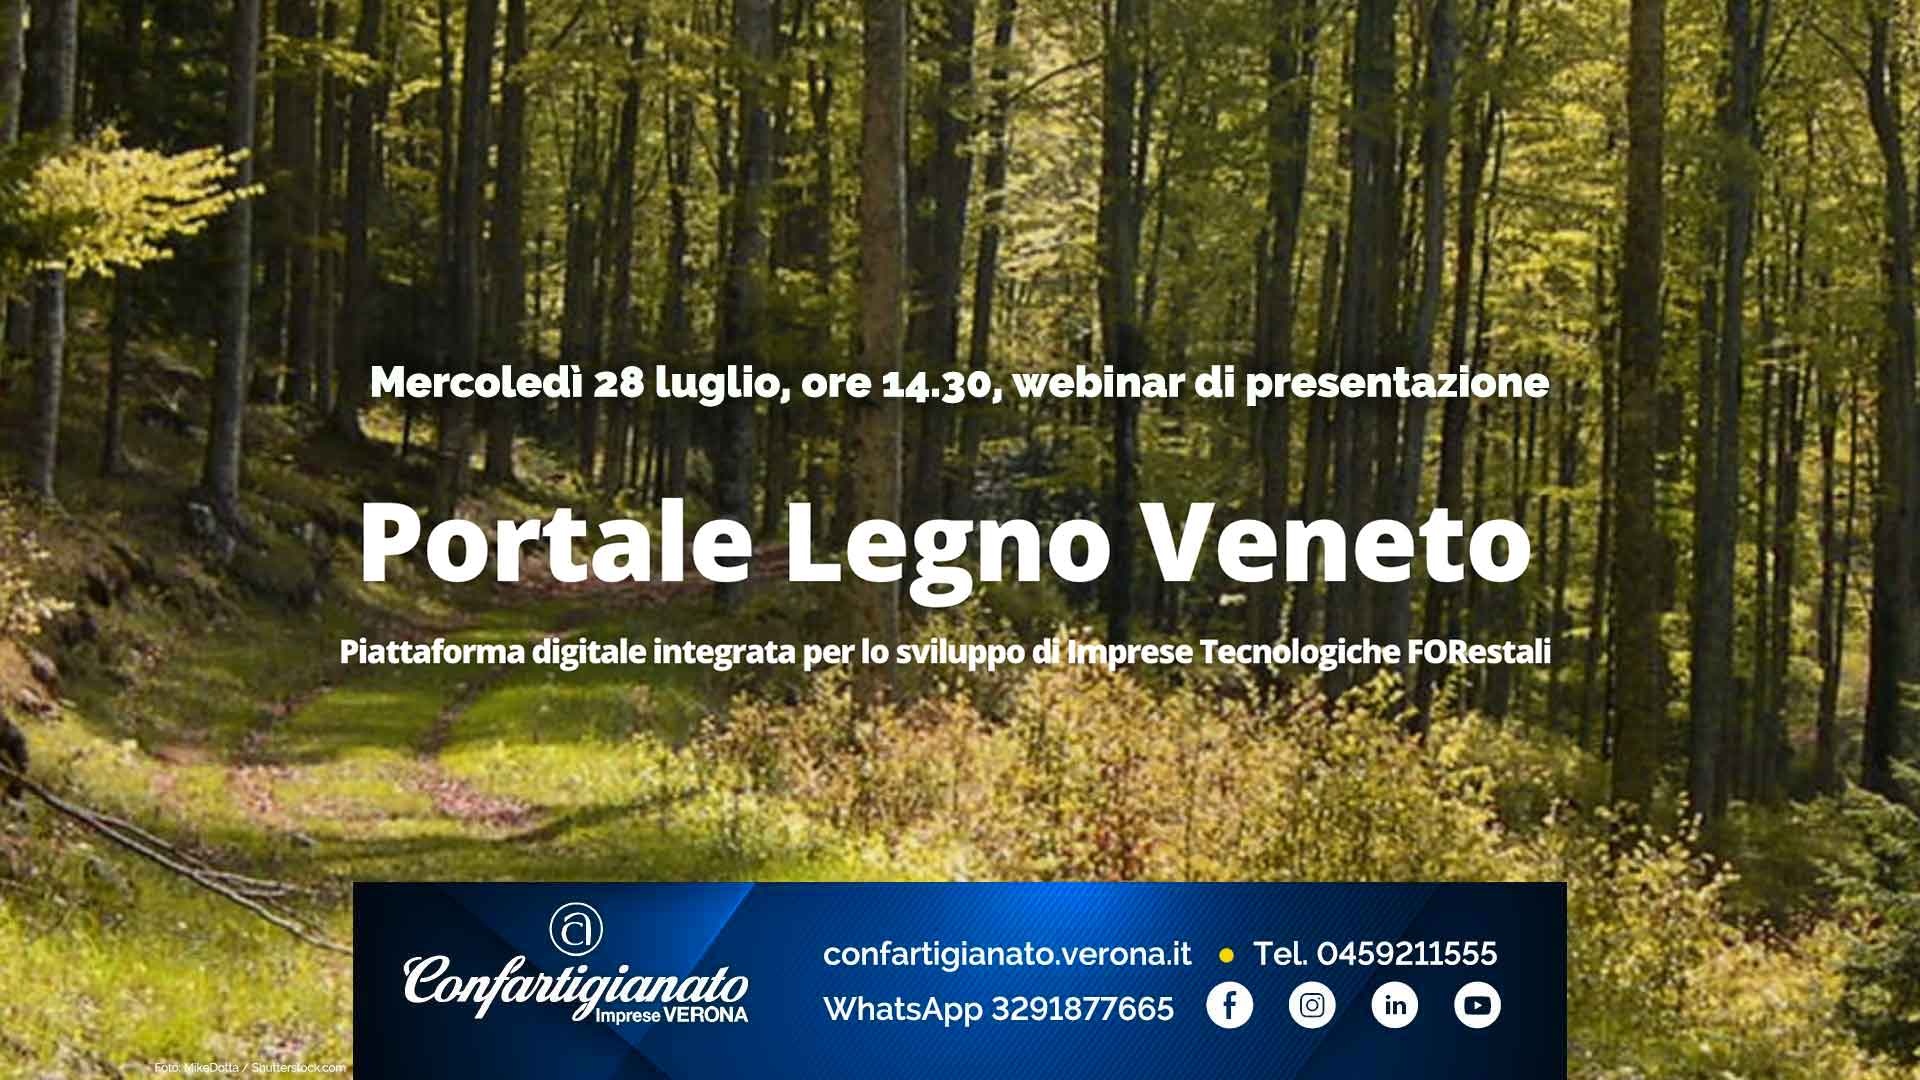 LEGNO ARREDO – Presentazione del Portale Legno Veneto: mercoledì 28 luglio in videoconferenza